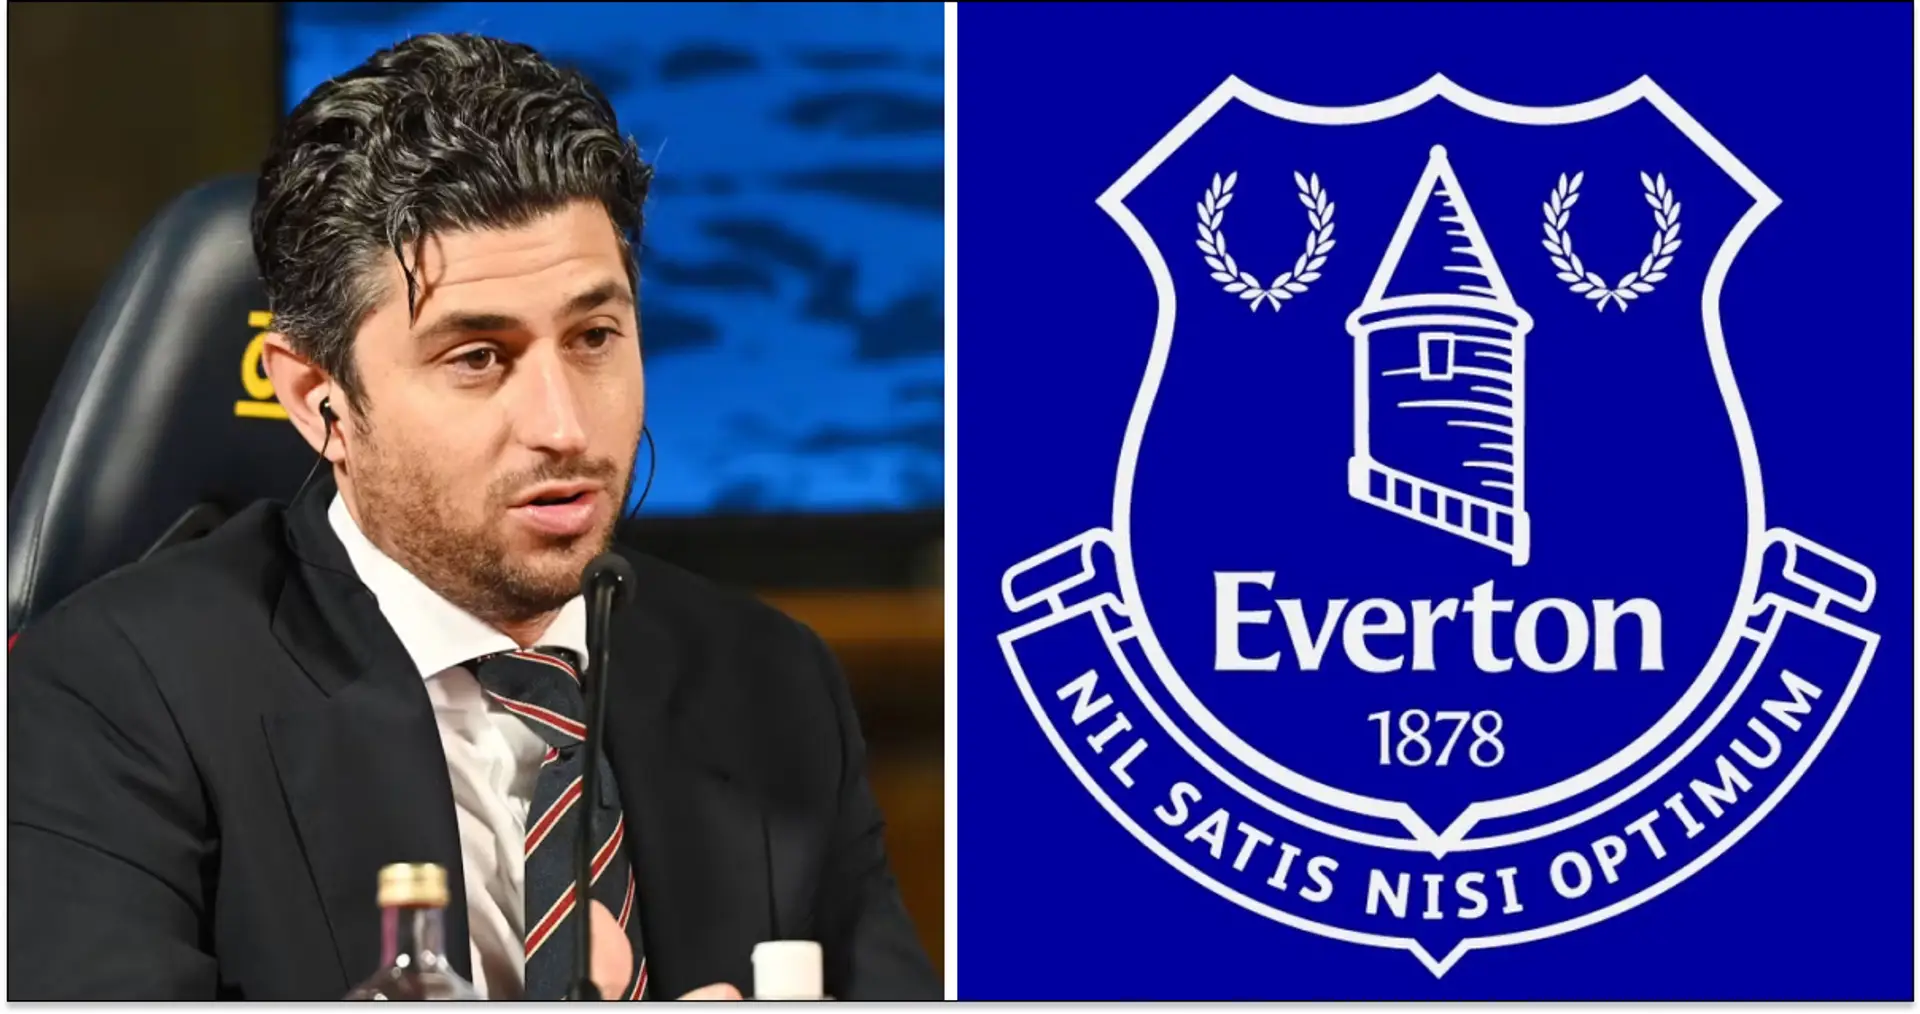 Neue Besitzer des FC Everton wegen Entführung und Erpressung angeklagt, Gründer wegen Drogenhandels verurteilt